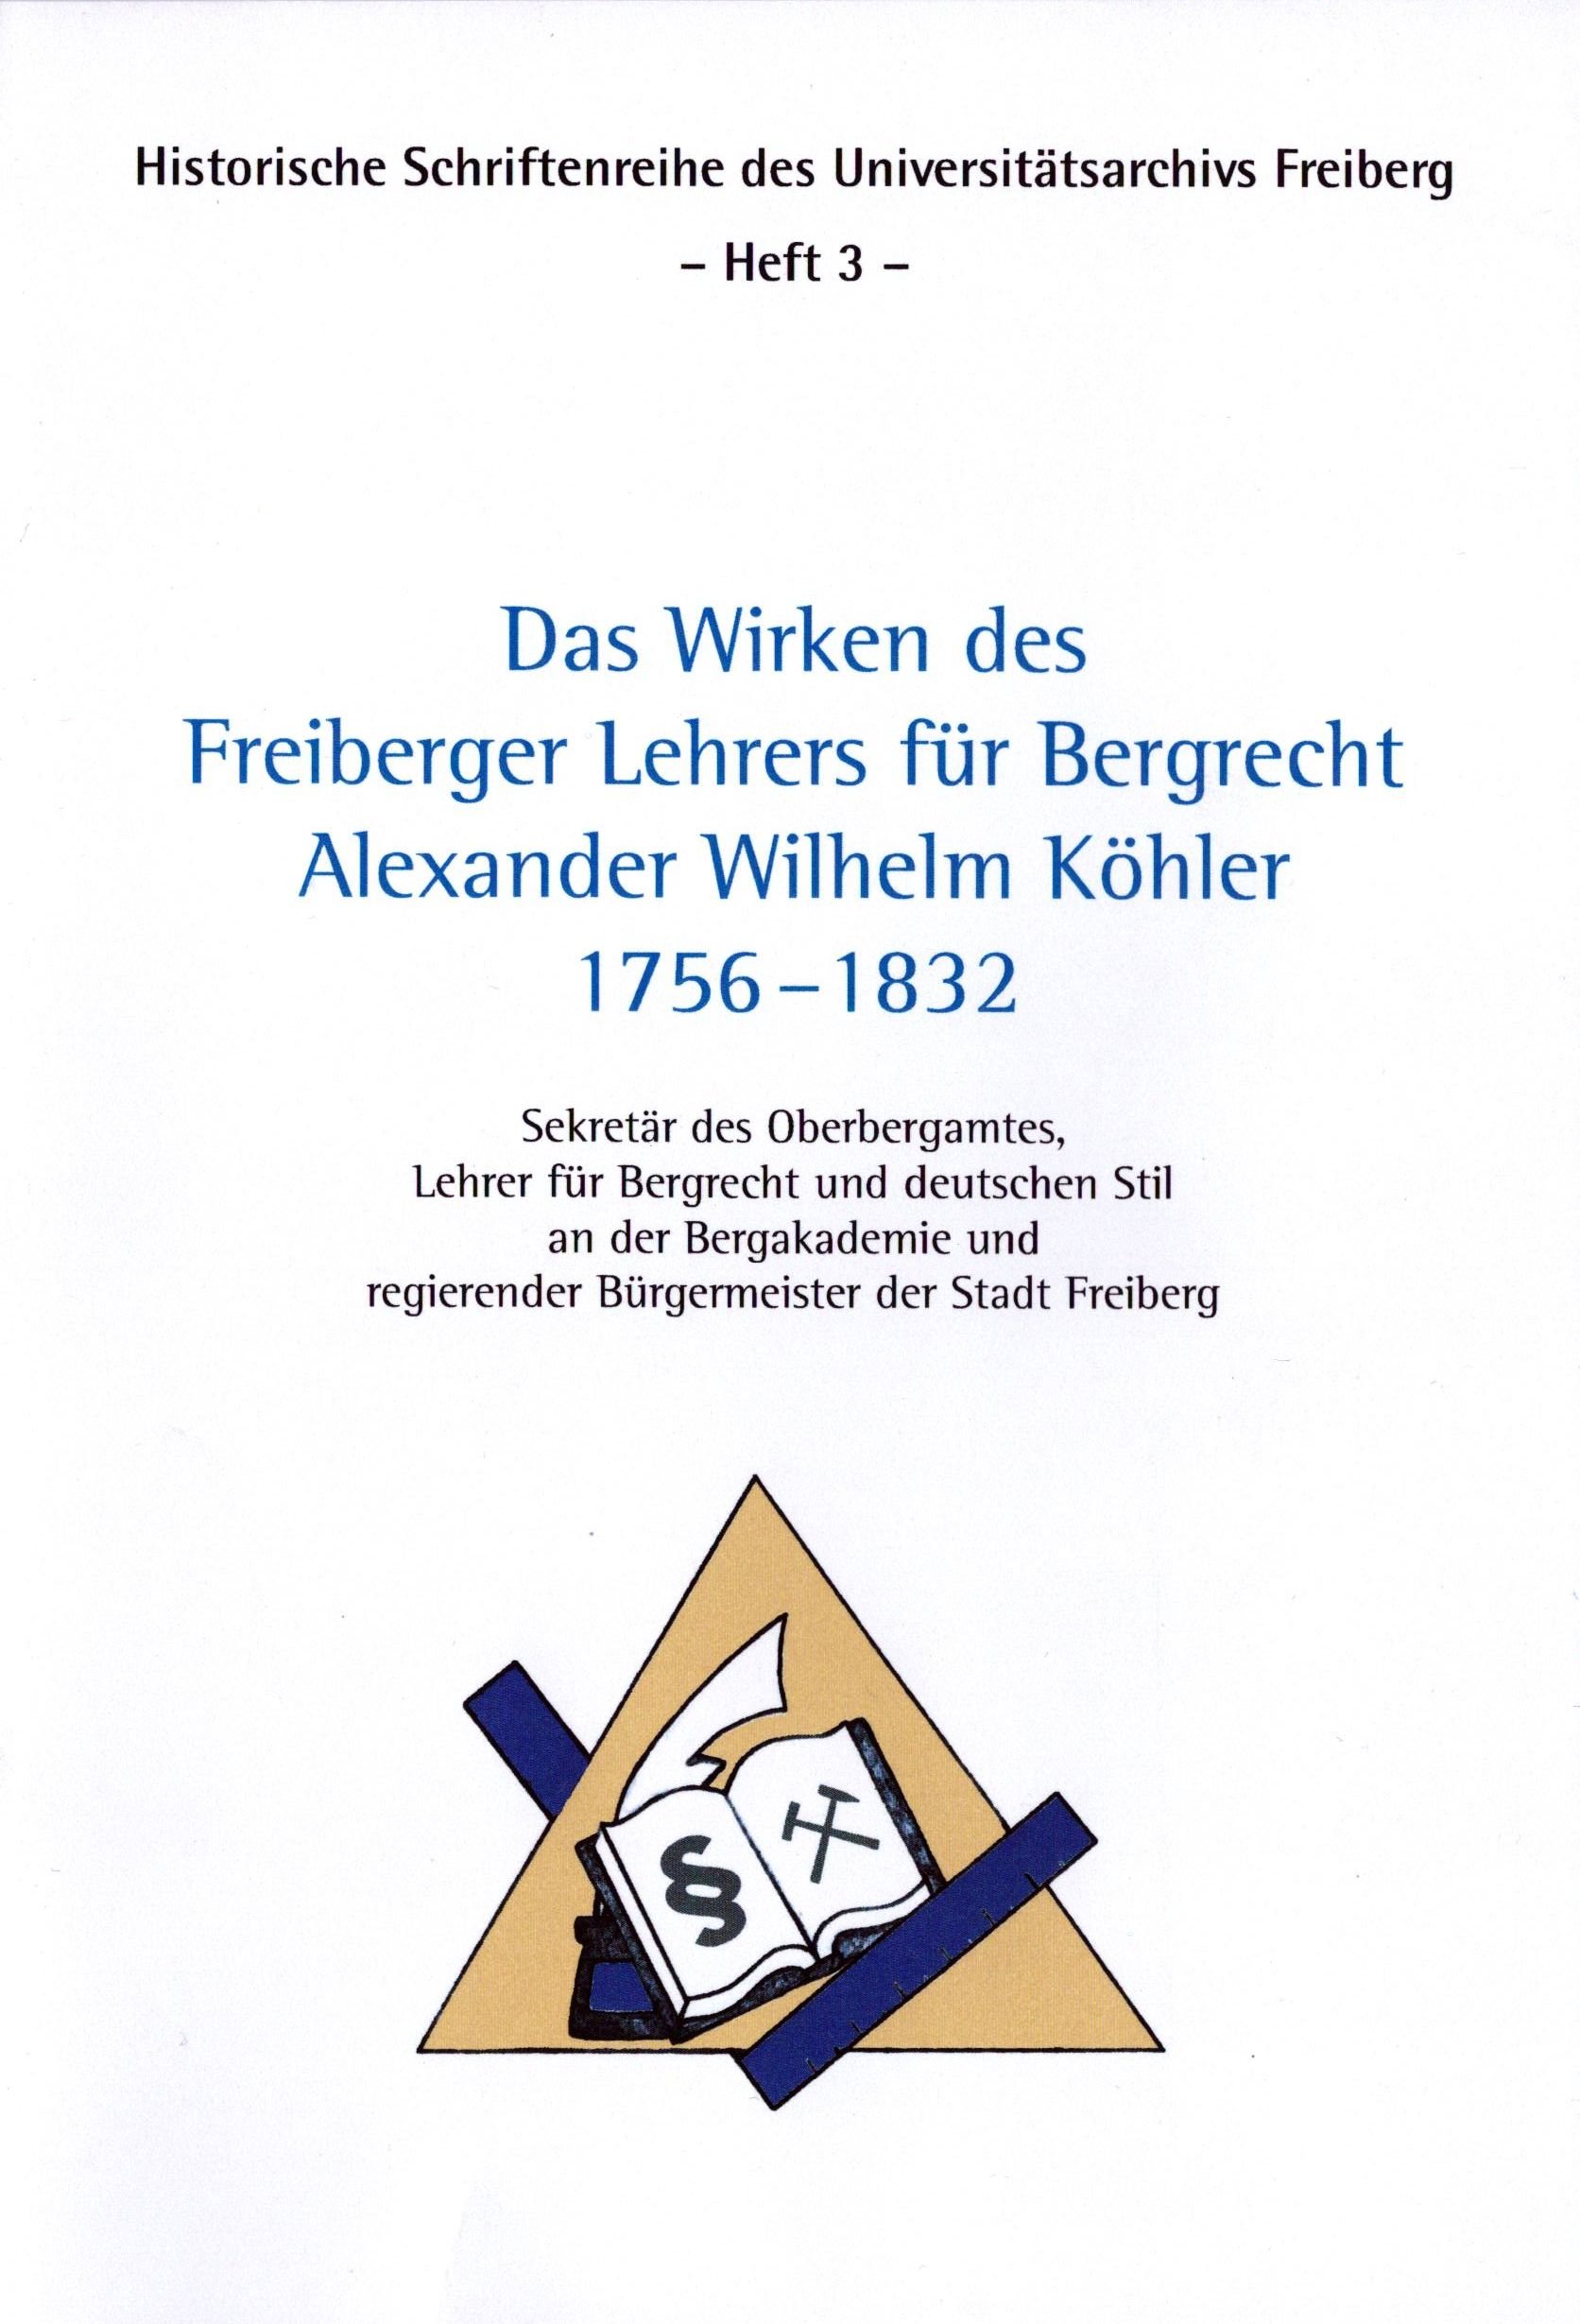 Das Wirken des Freiberger Lehrers für Bergrecht Alexander Wilhelm Köhler 1756 - 1832 (Archiv SAXONIA-FREIBERG-STIFTUNG CC BY-NC-SA)